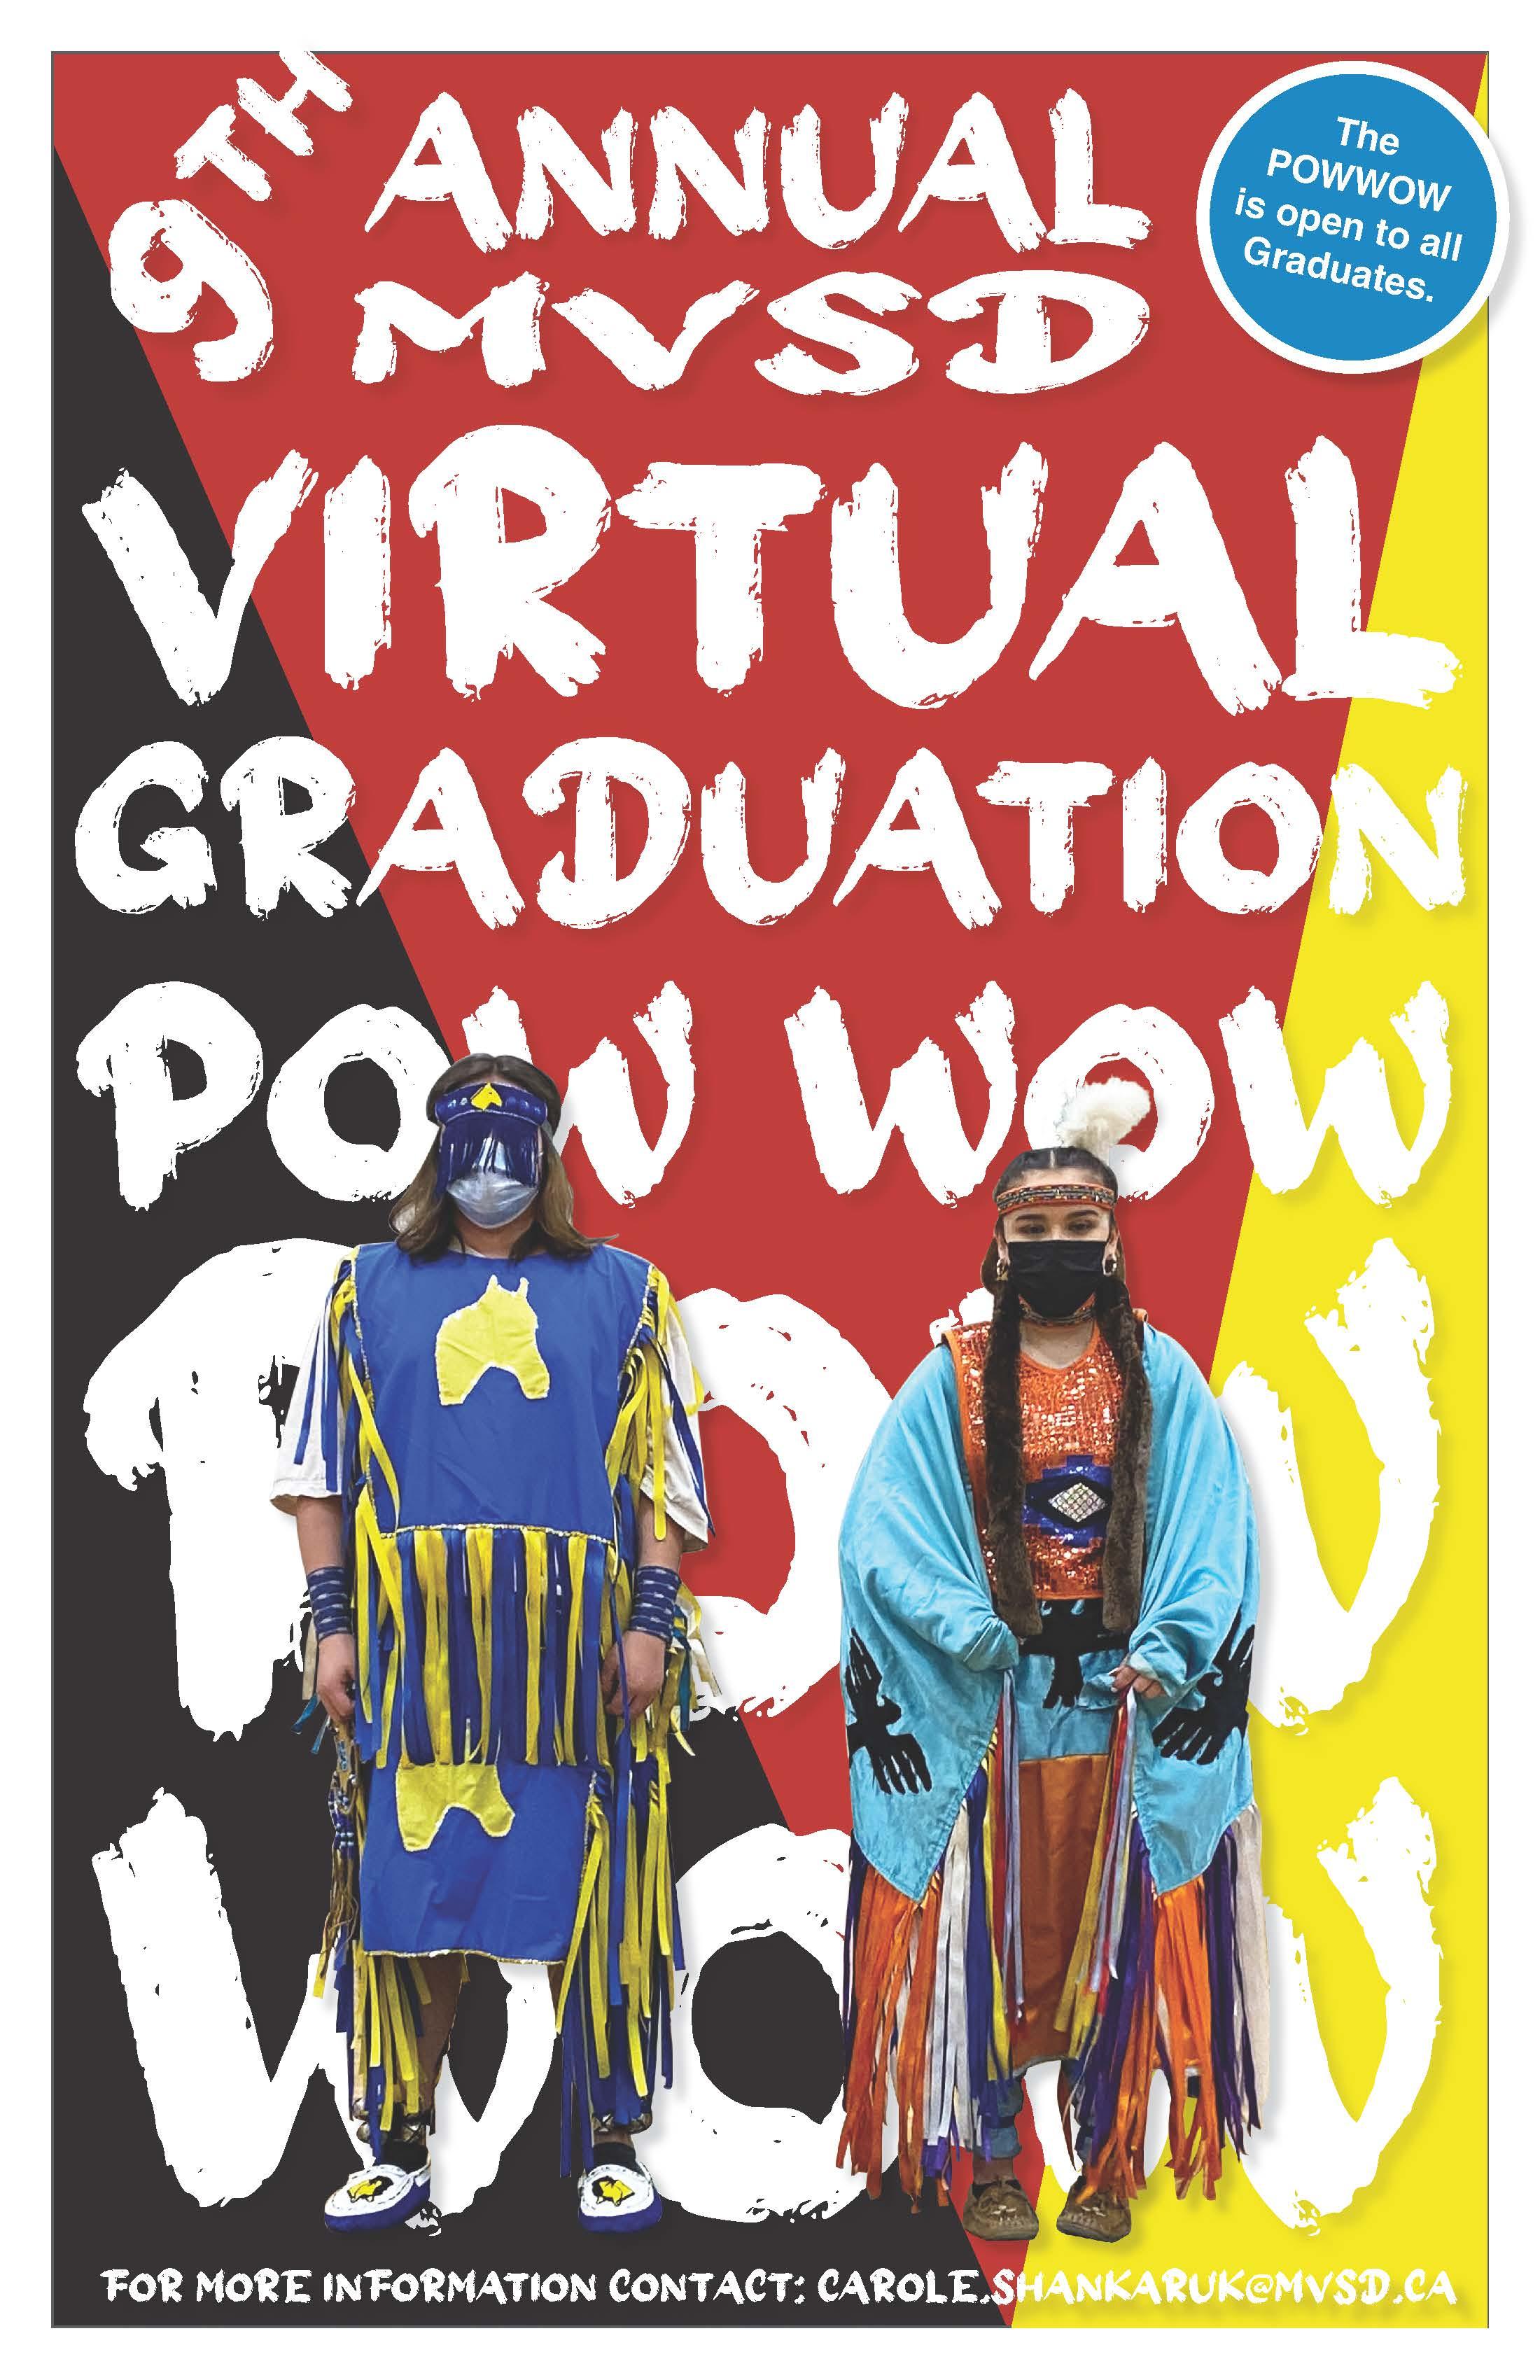 MVSD Graduation Powwow